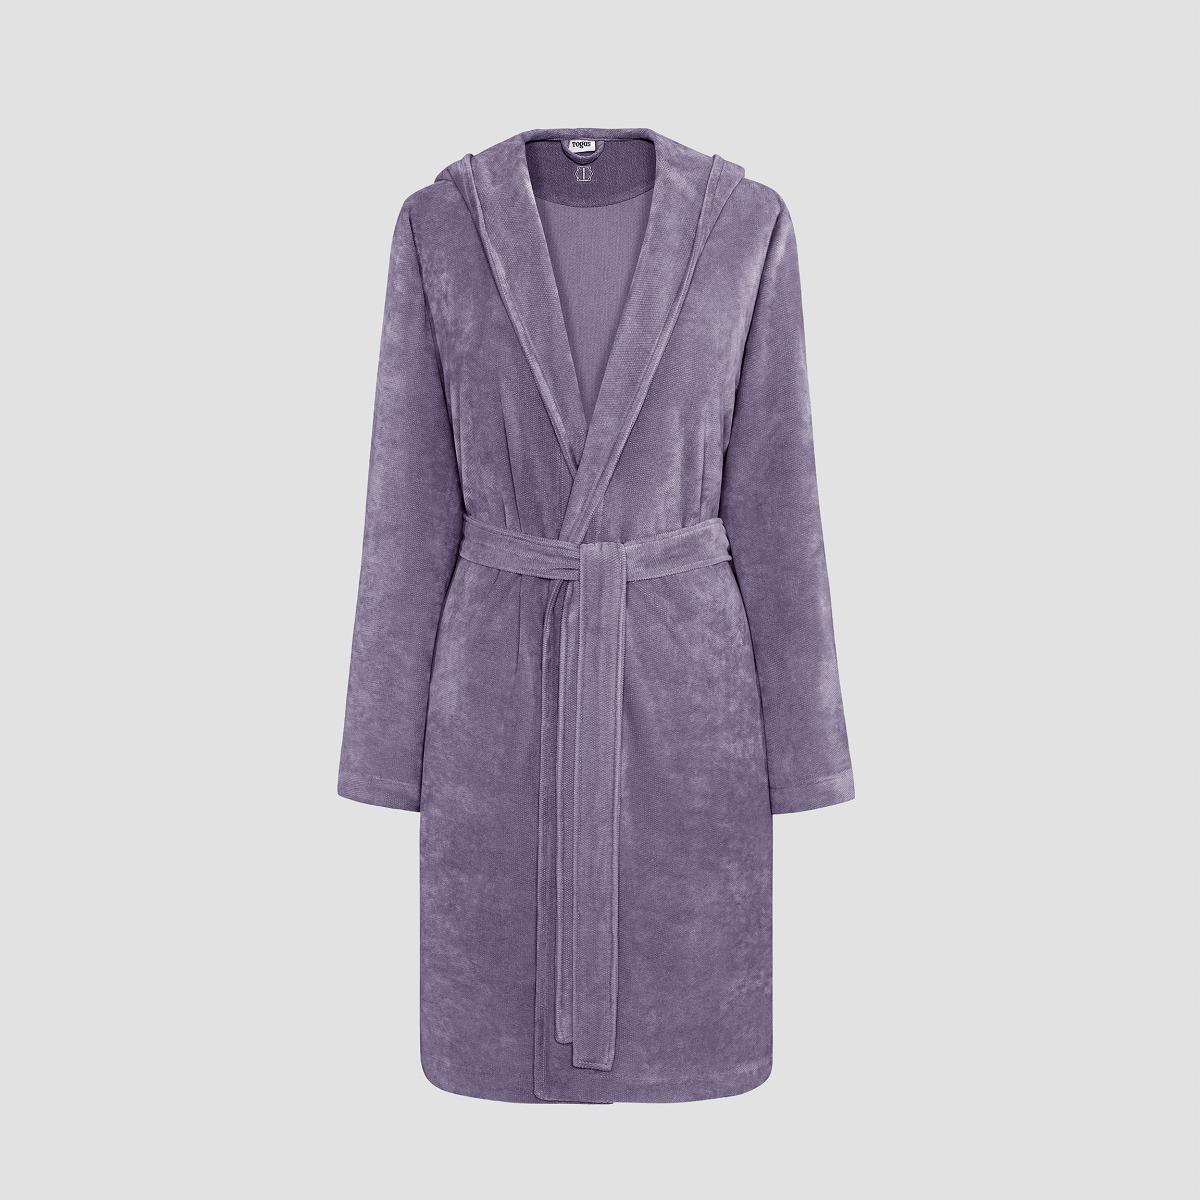 Халат Togas Талия фиолетовый XL(50) жен халат ромашки фиолетовый р 50